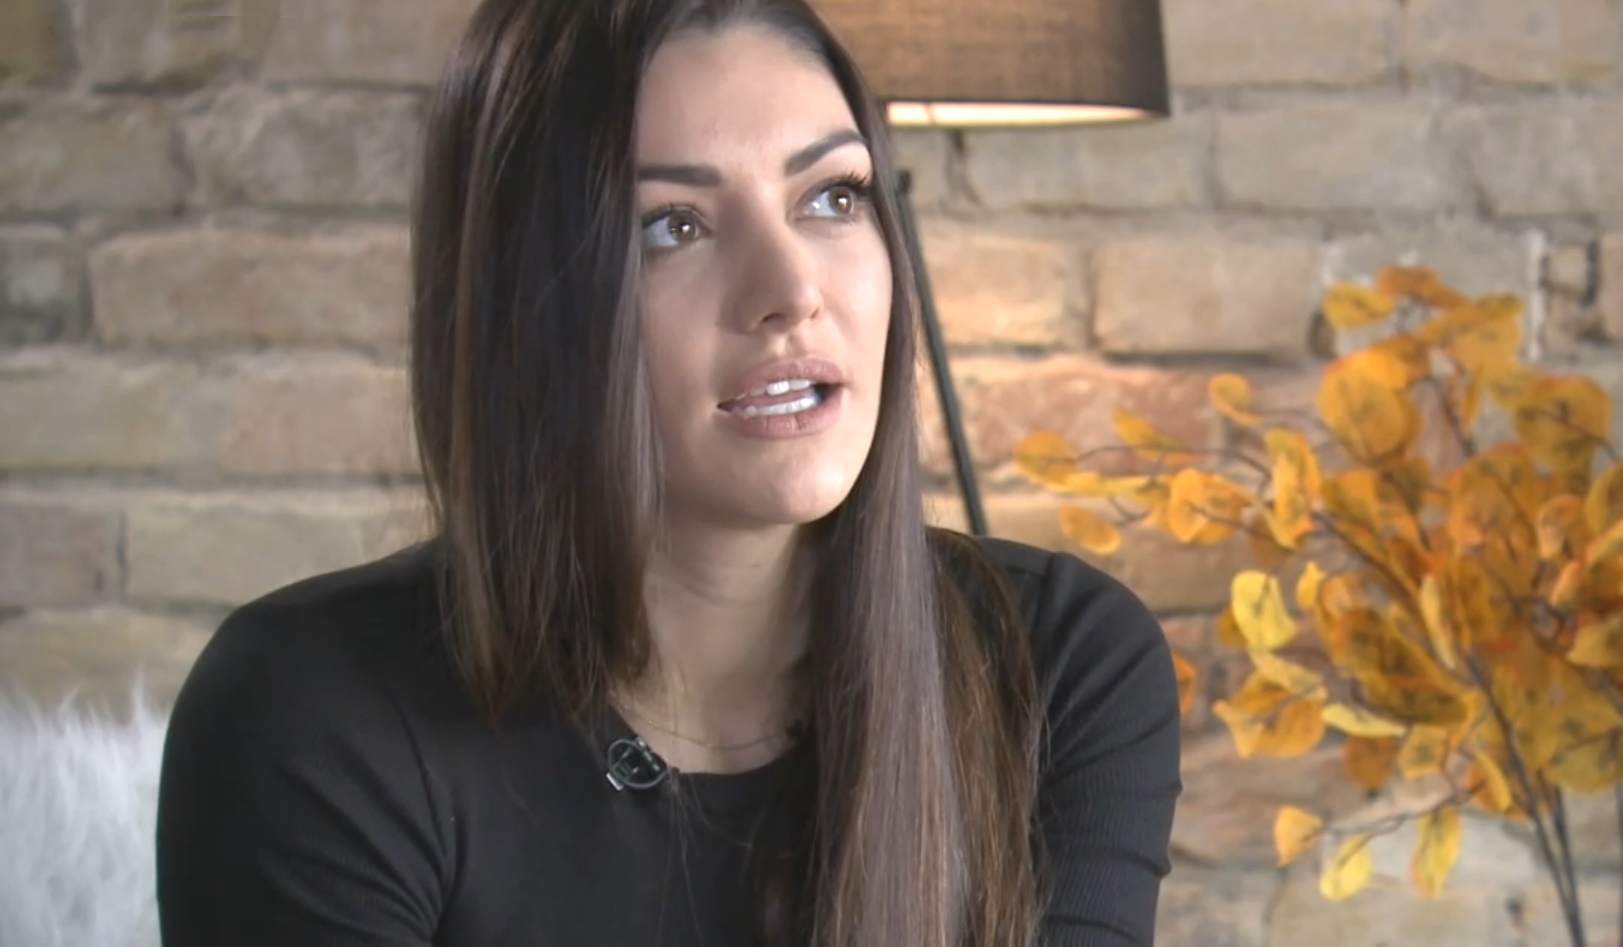 Kulcsár Edina feldúltan nyilatkozott a tévében: Nem hiszem, hogy kurva lennék